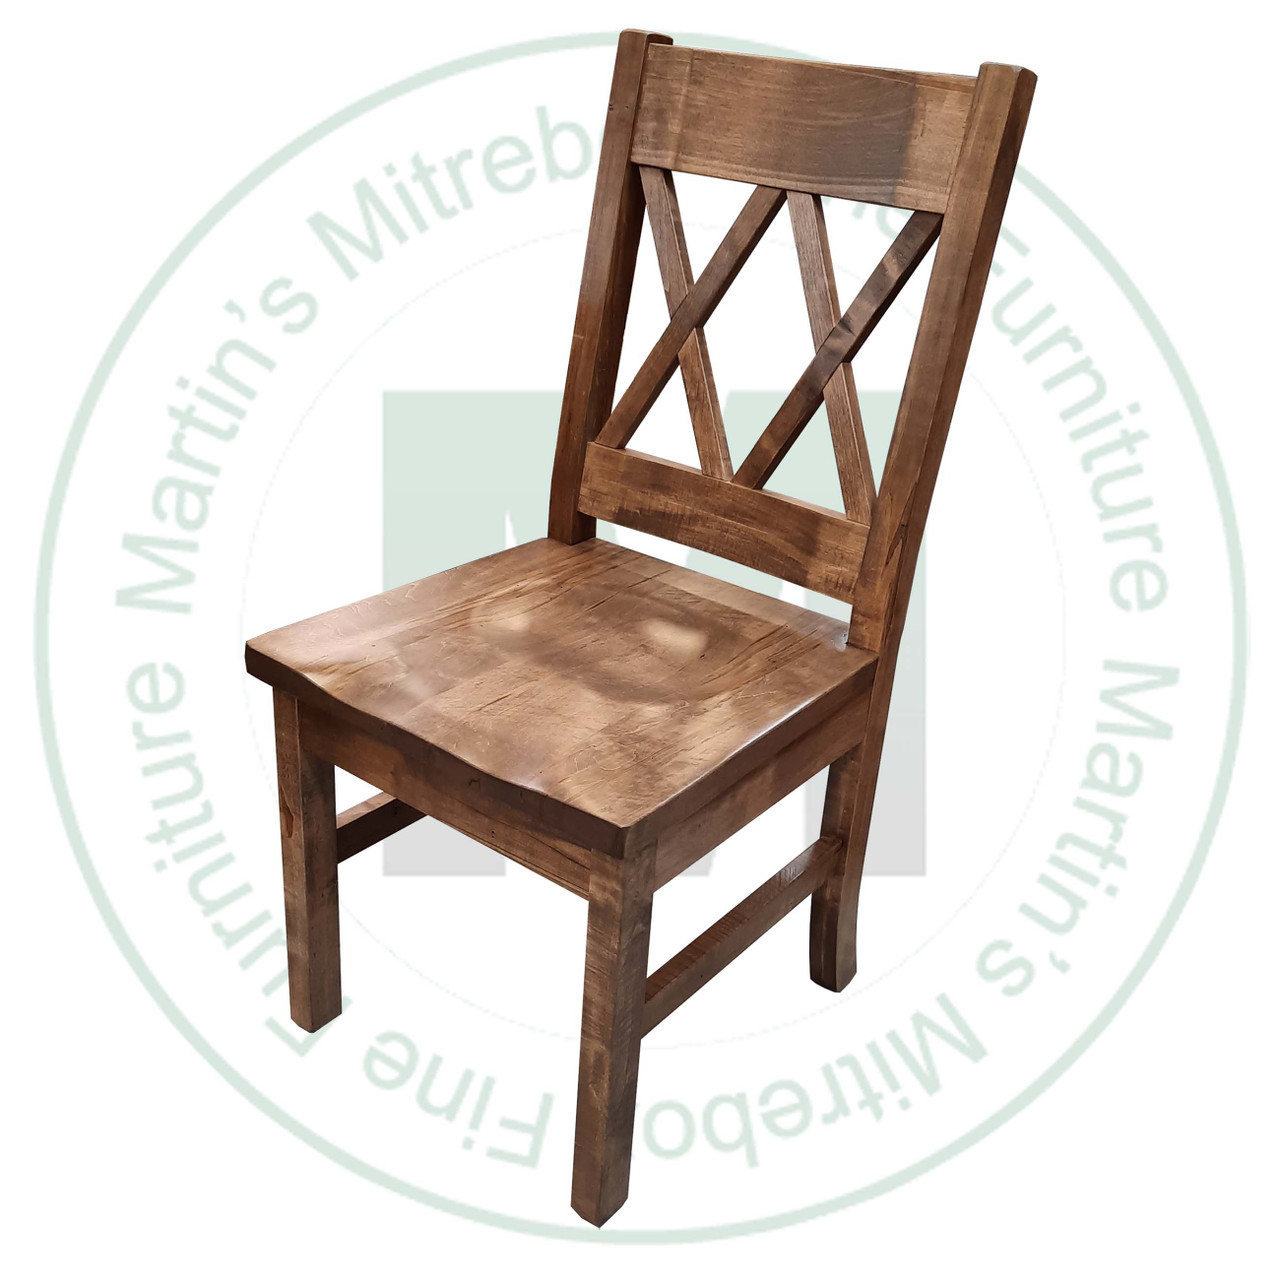 Maple Bonanza Side Chair 17'' Deep x 39'' High x 18'' Wide